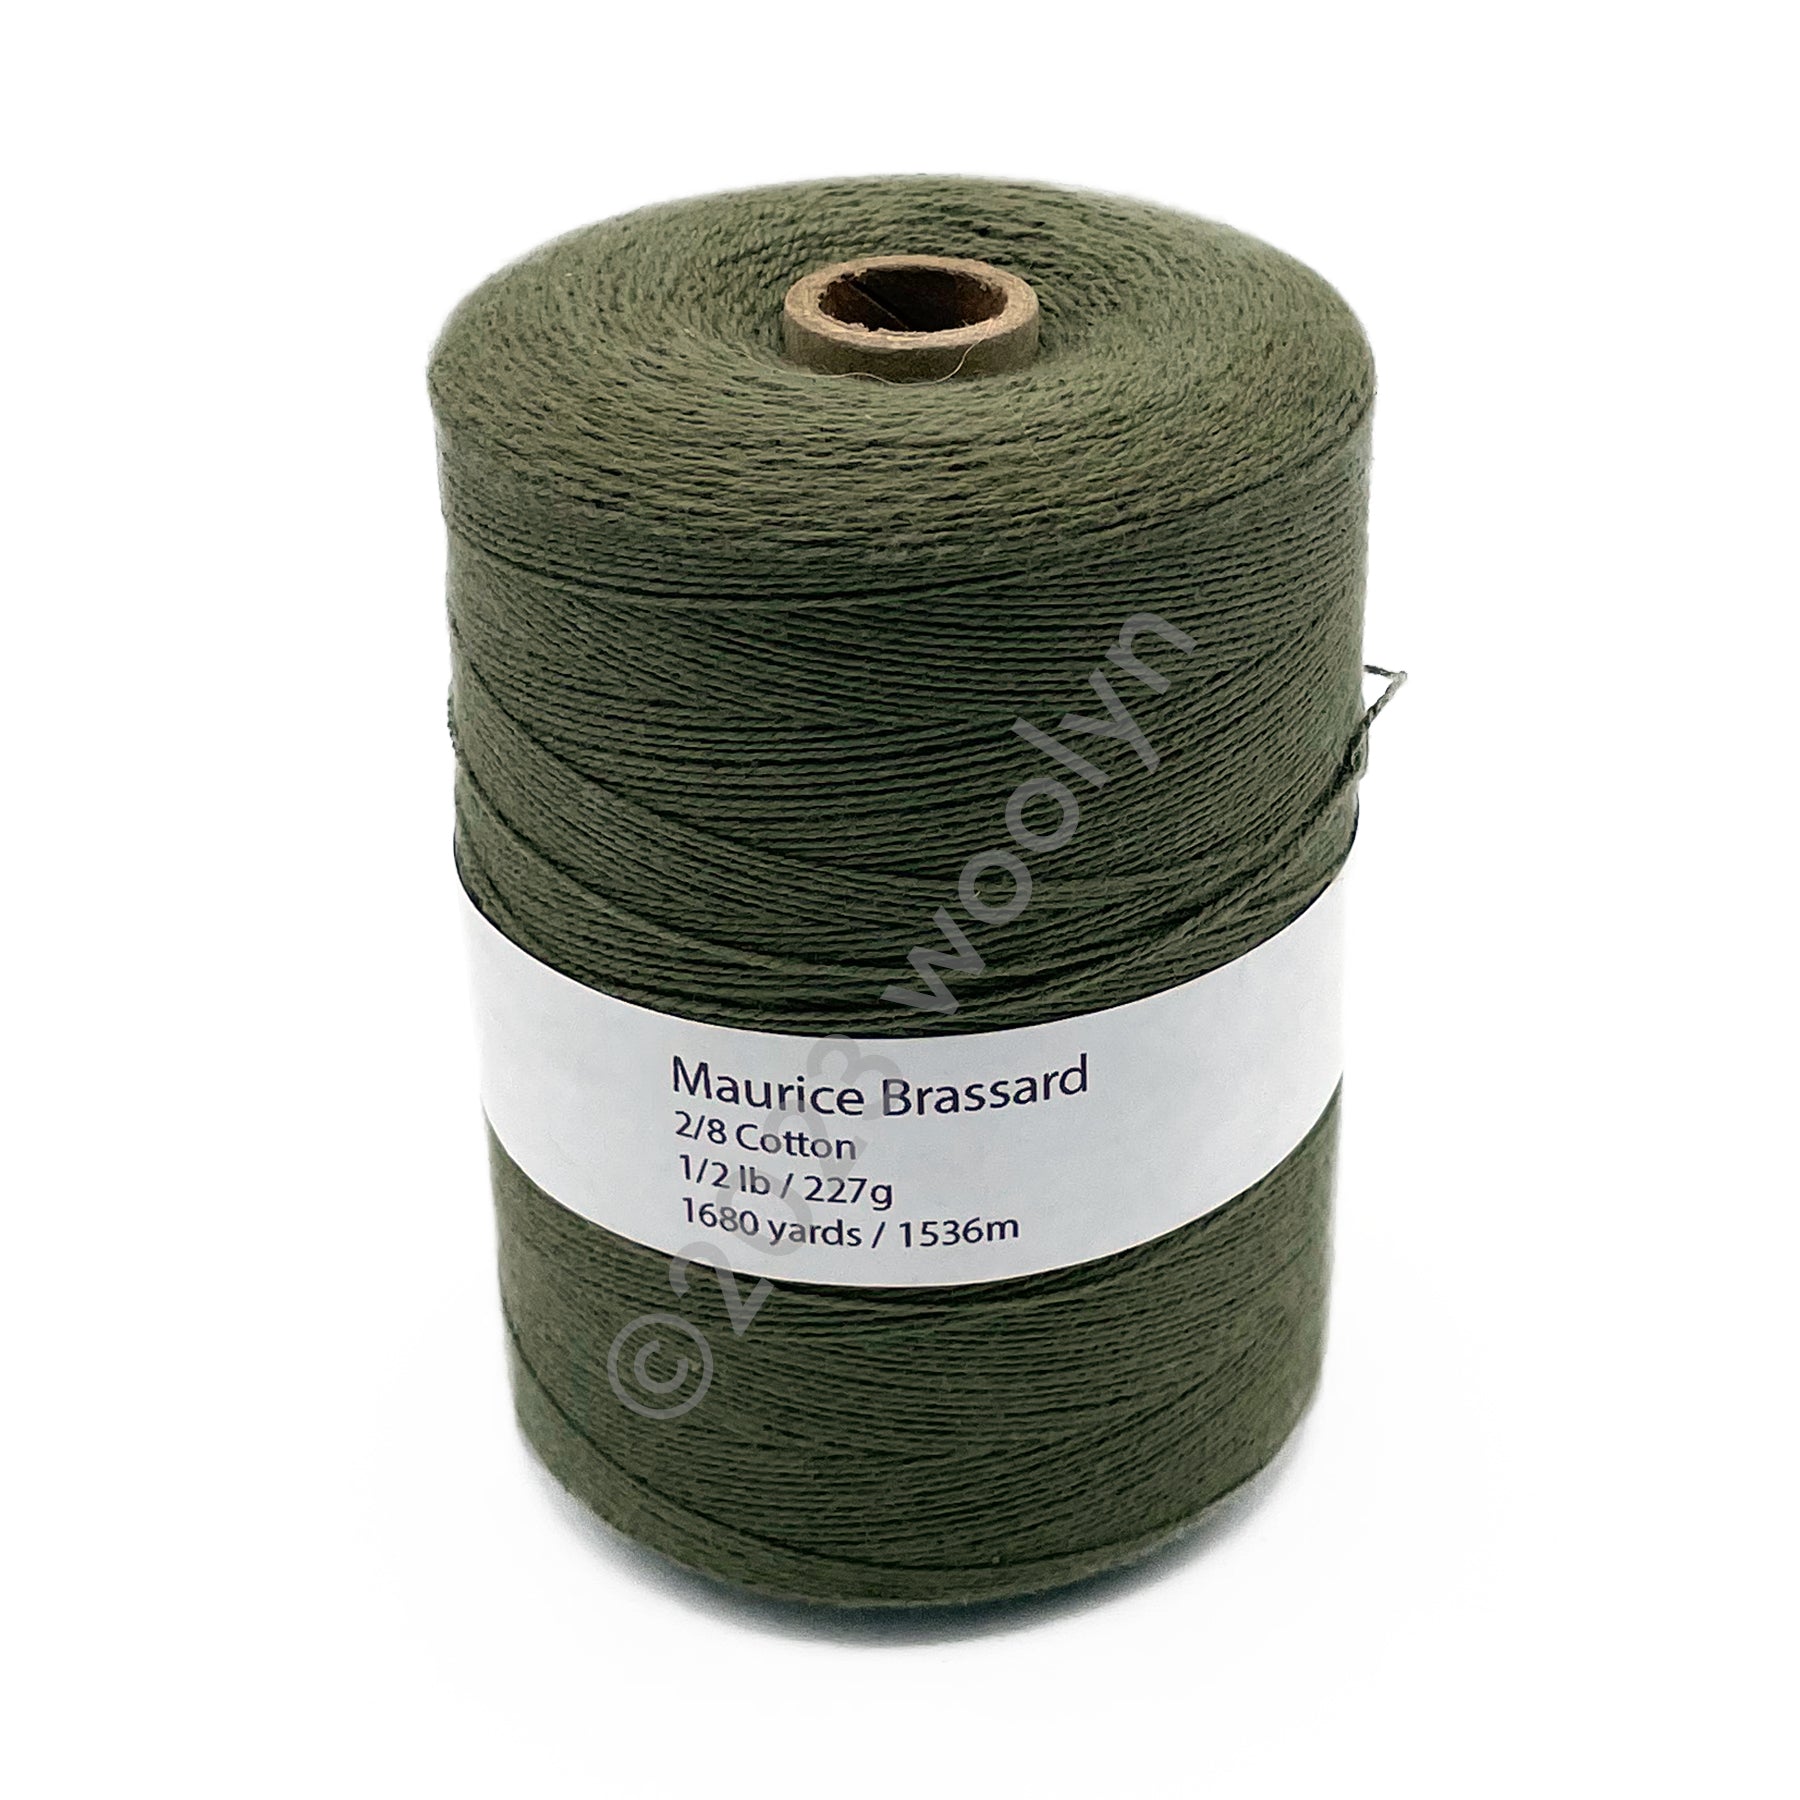 Brassard 8/2 Cotton